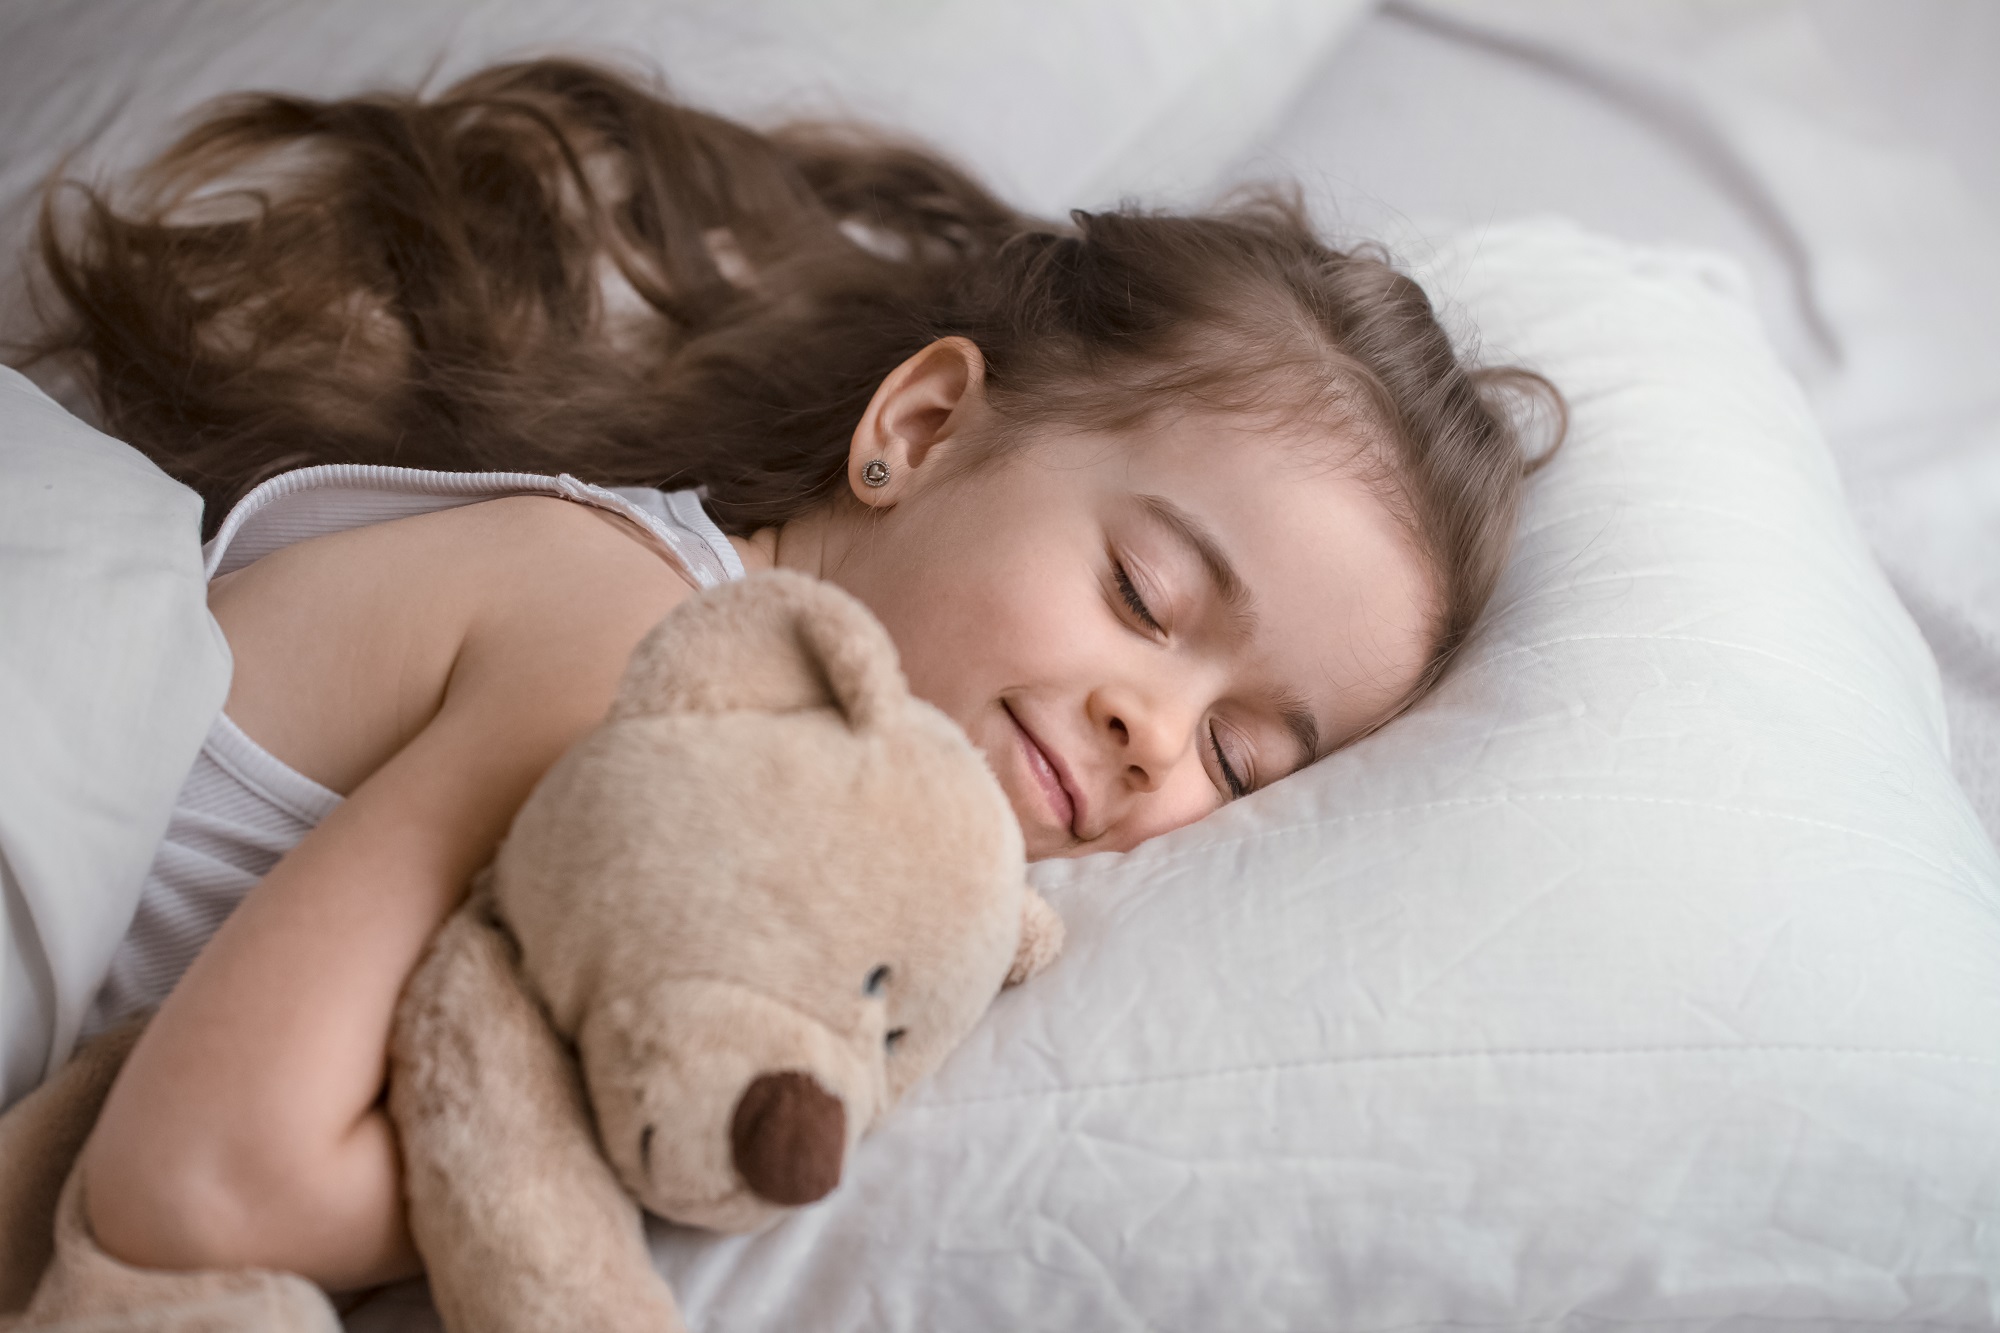 Trẻ ngủ ít hơn 9 giờ mỗi đêm có trí nhớ, trí thông minh và sức khỏe kém so với bạn cùng lứa ngủ đủ giấc - Ảnh 2.